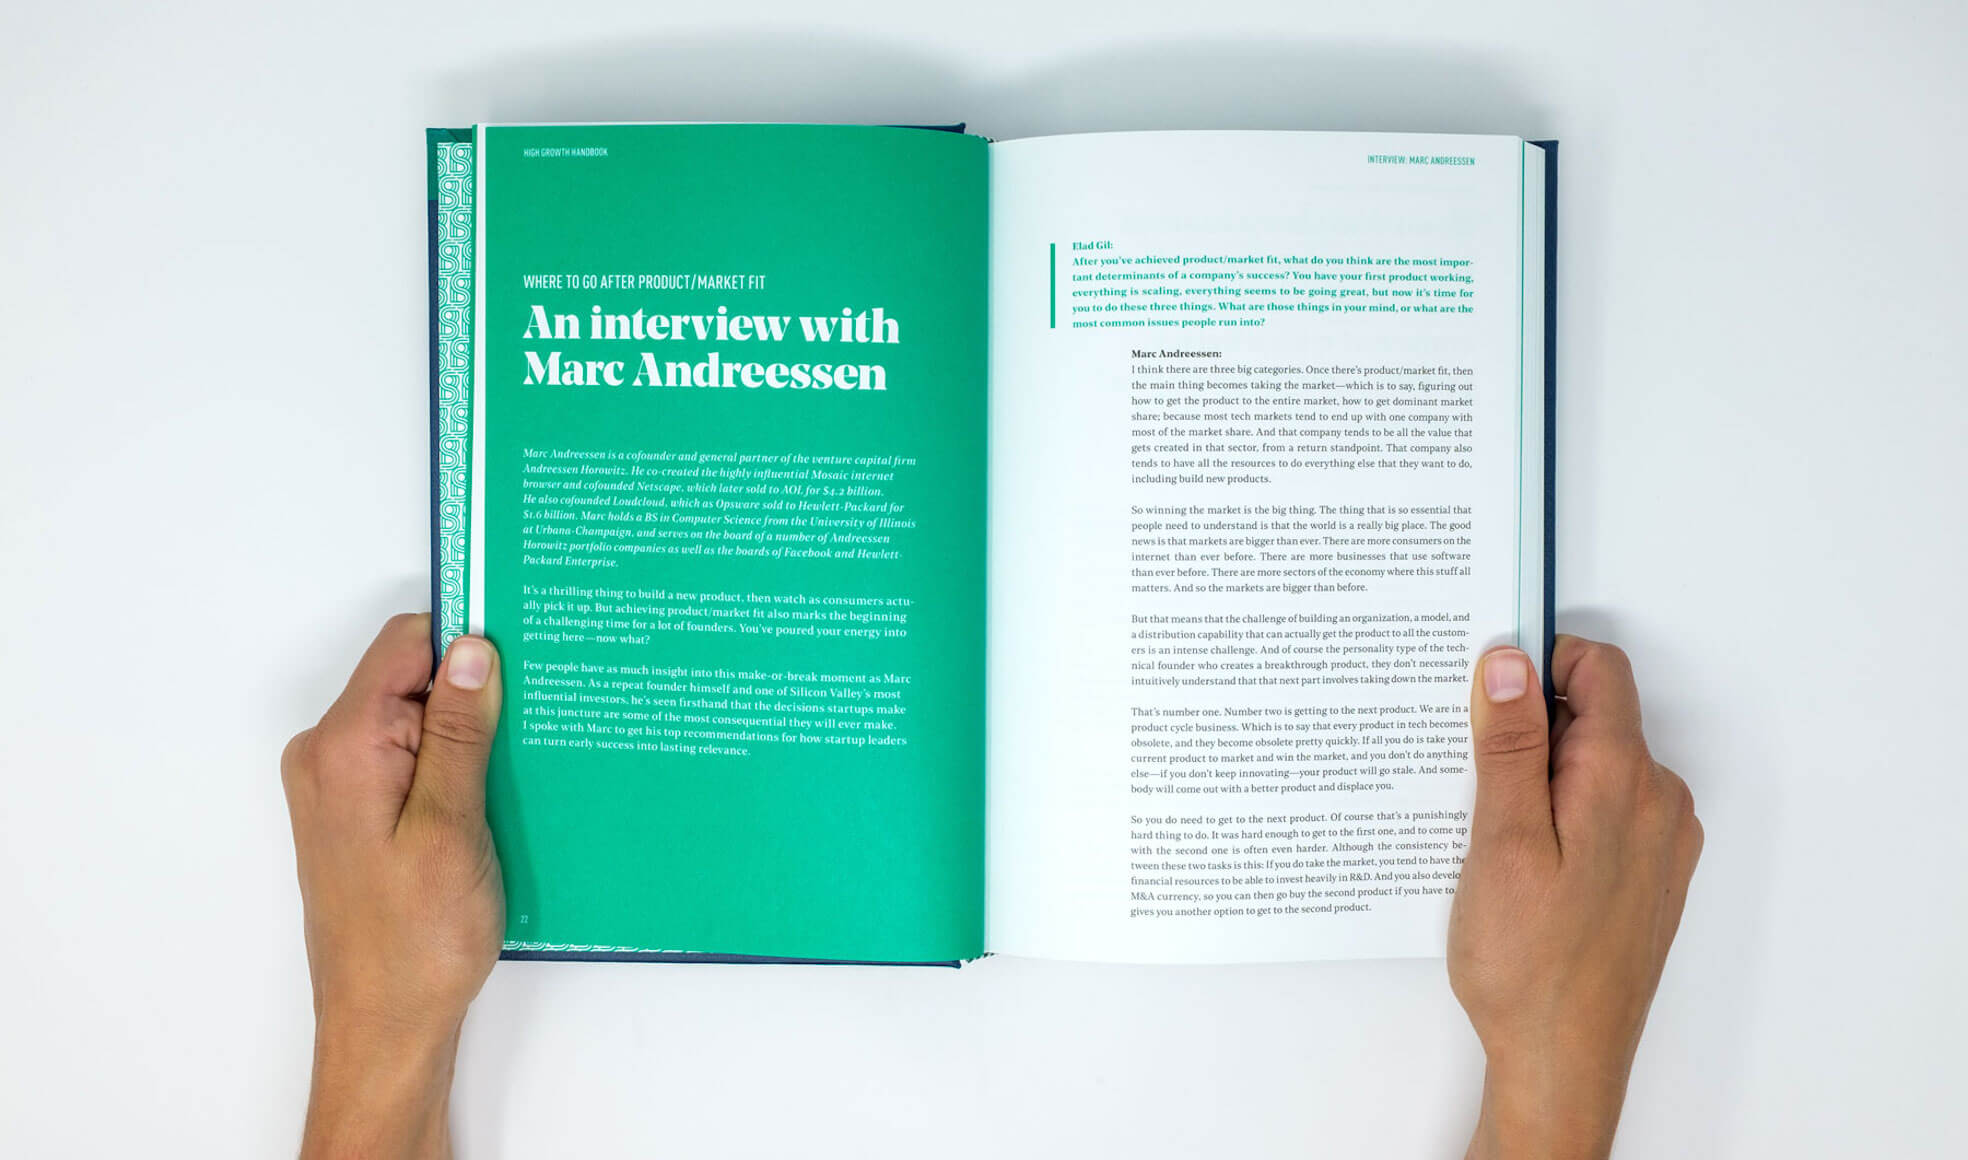 Marc Andreessen High Growth Handbook excerpt